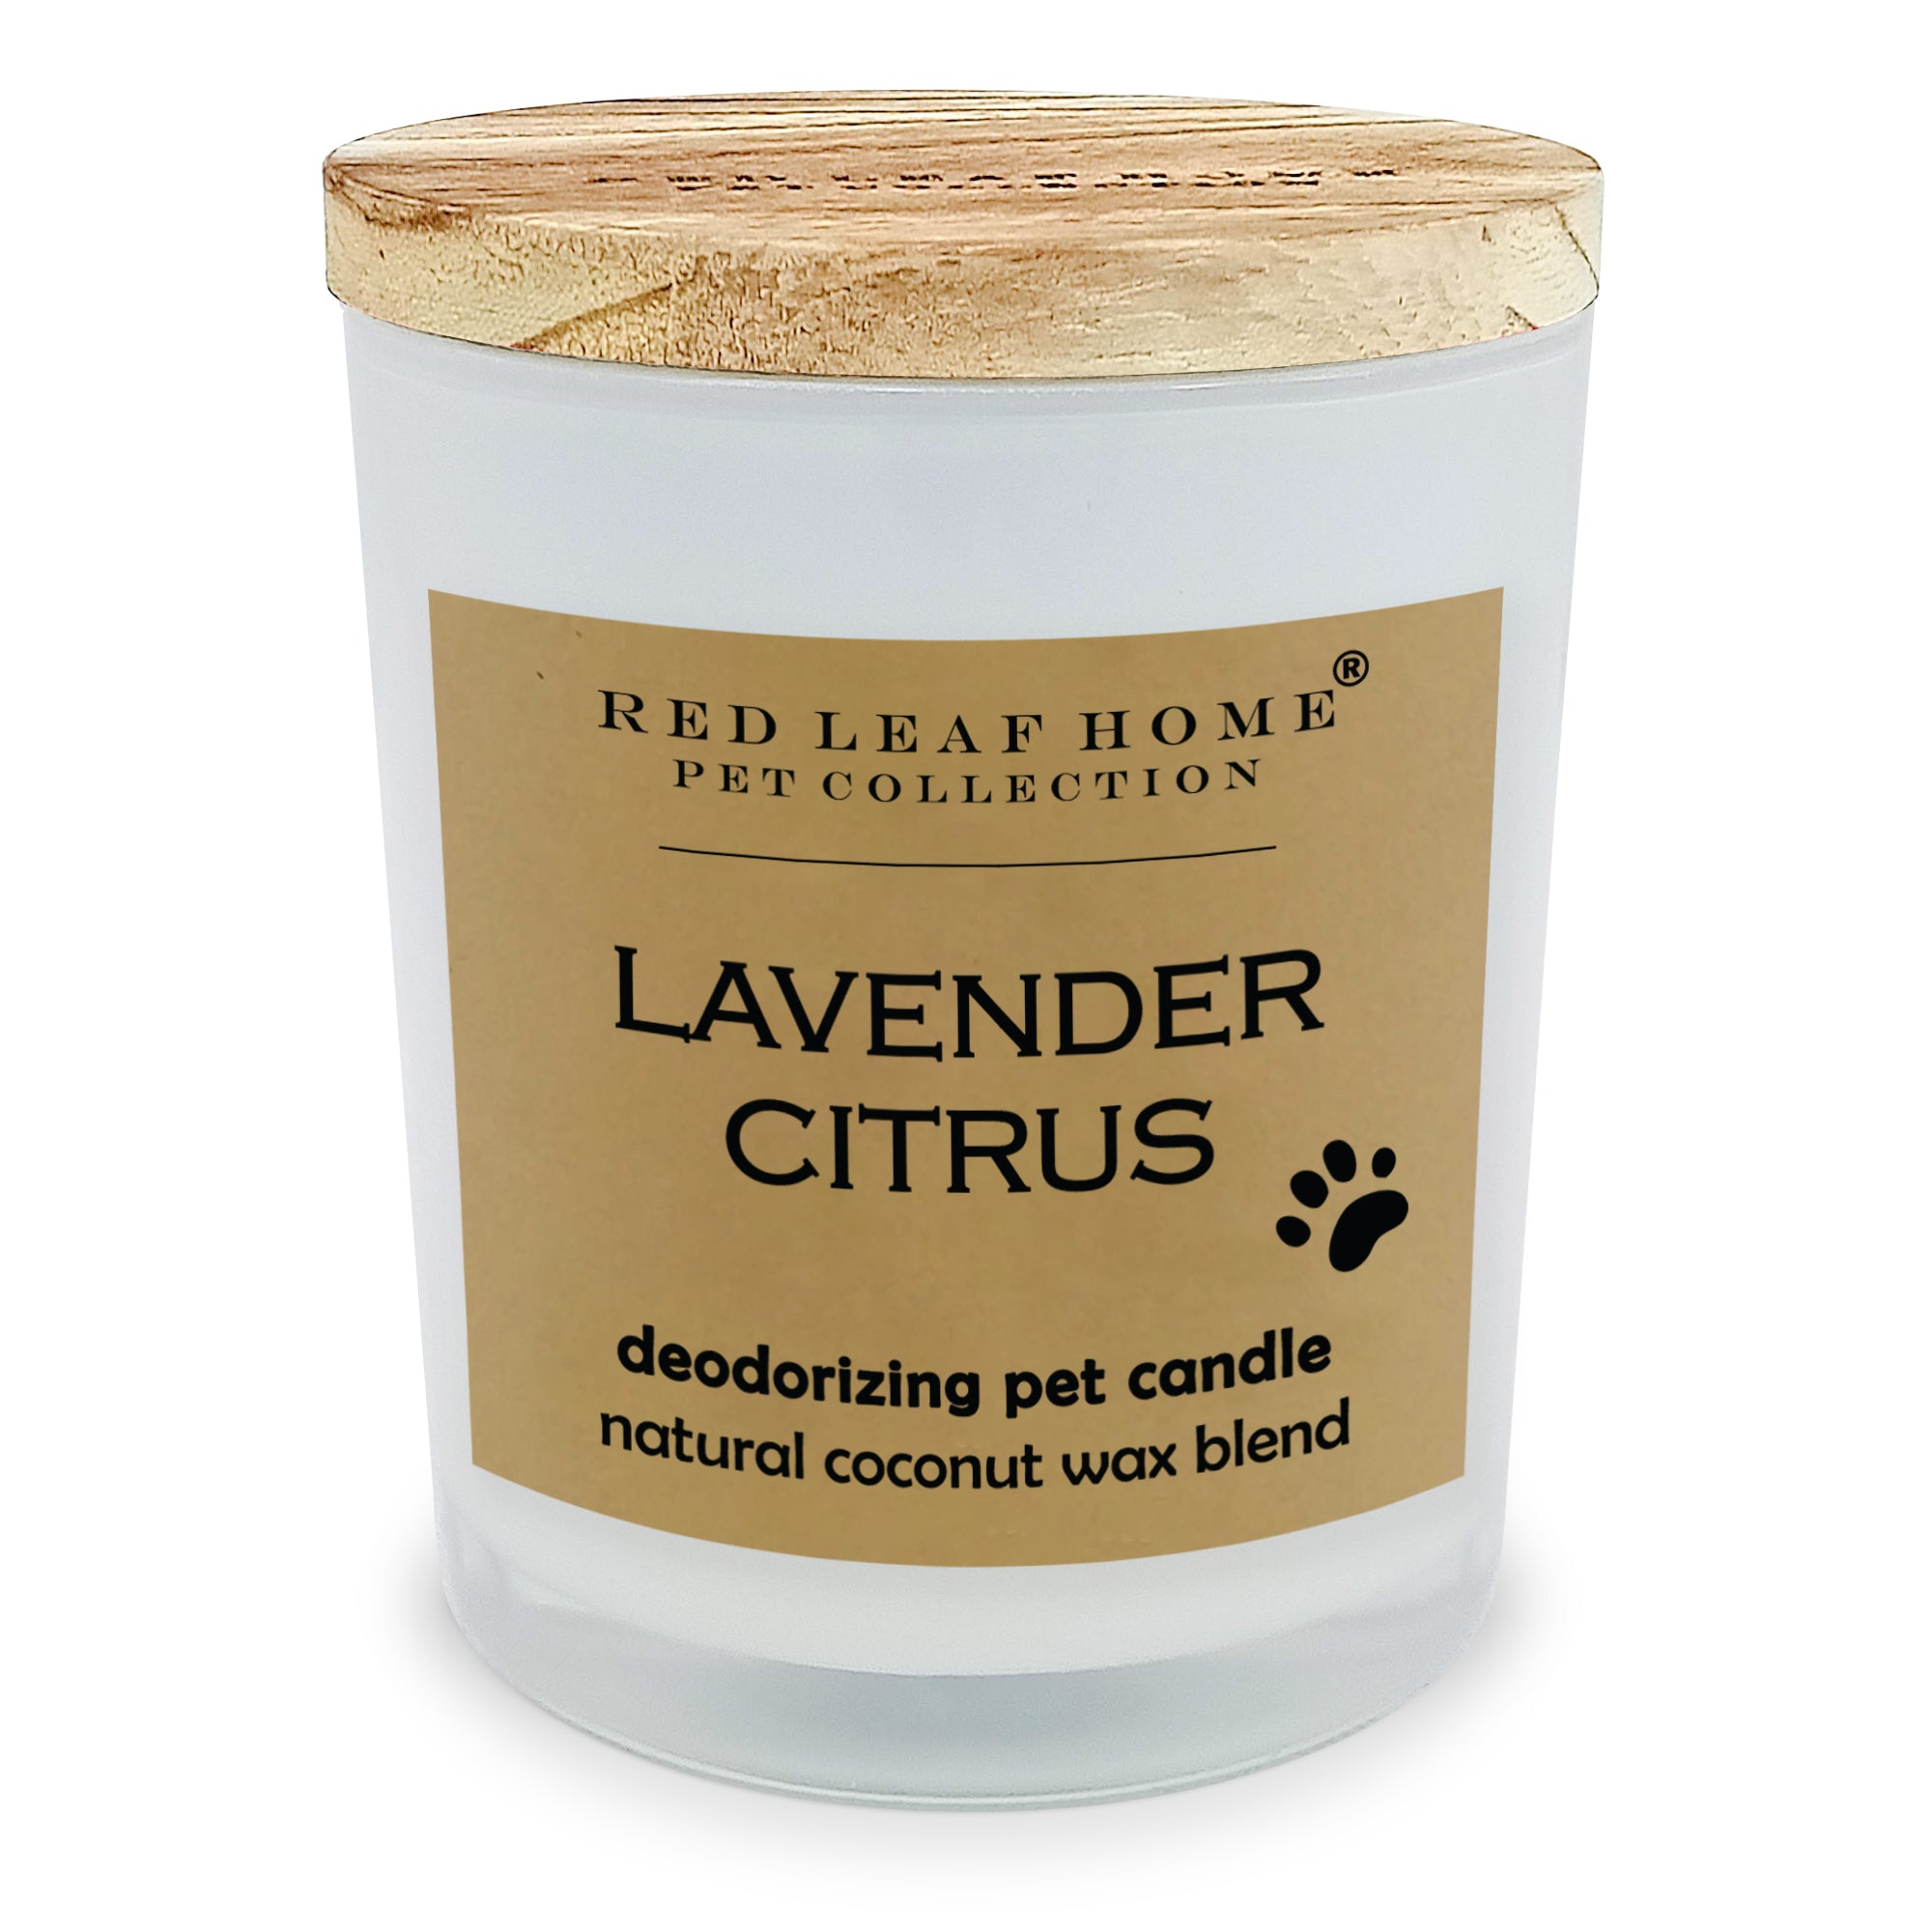 Lavender Citrus Pet Deodorizing